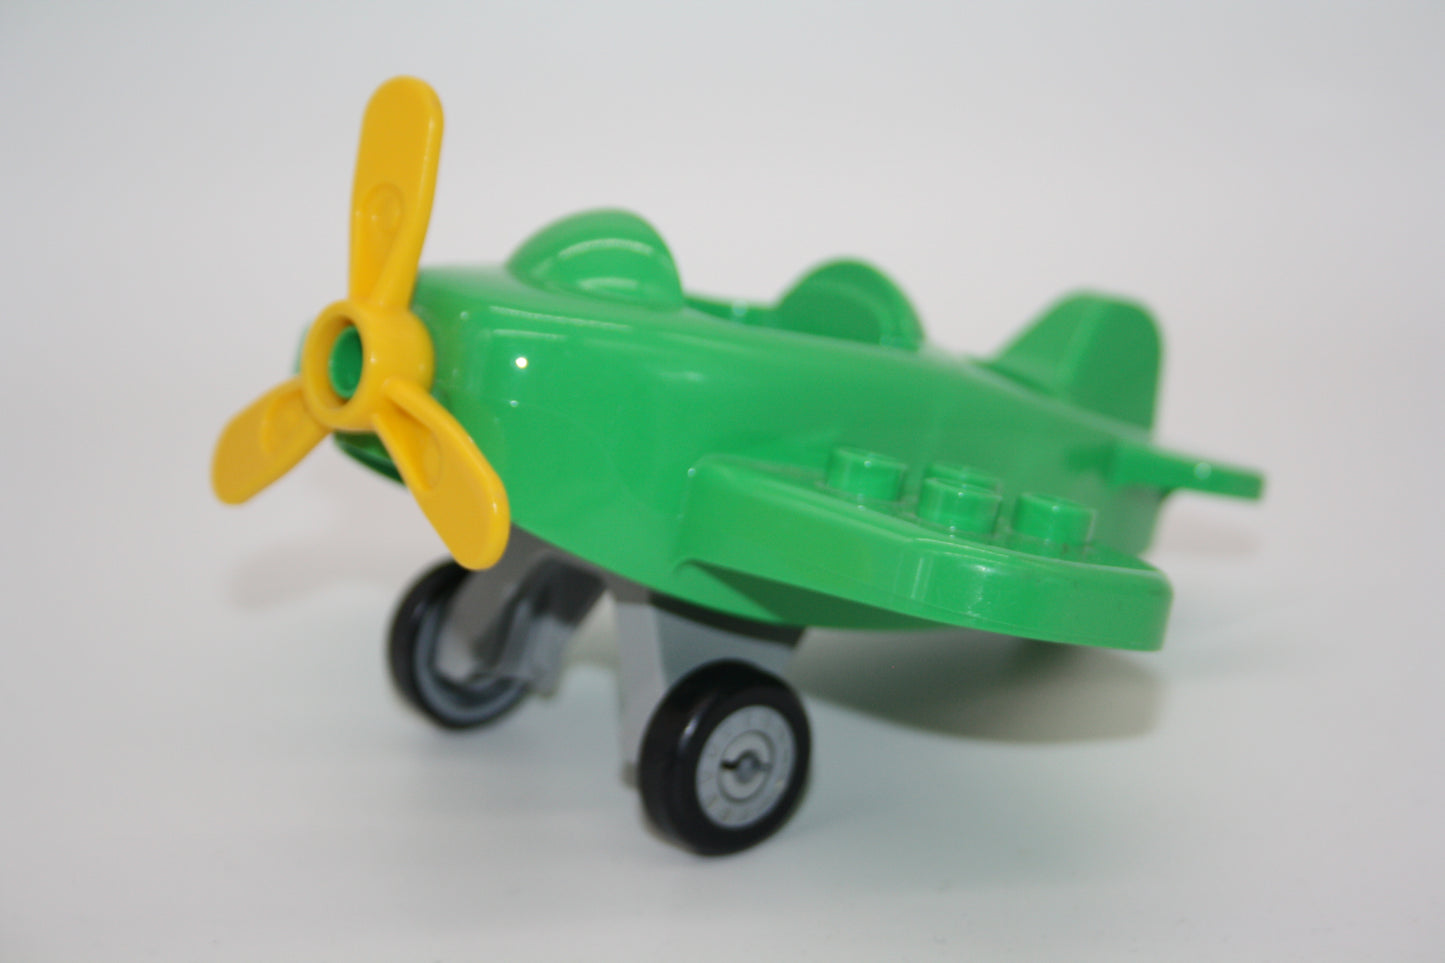 Duplo - Mitteldecker Flugzeug - grün - Flieger/Flugzeug